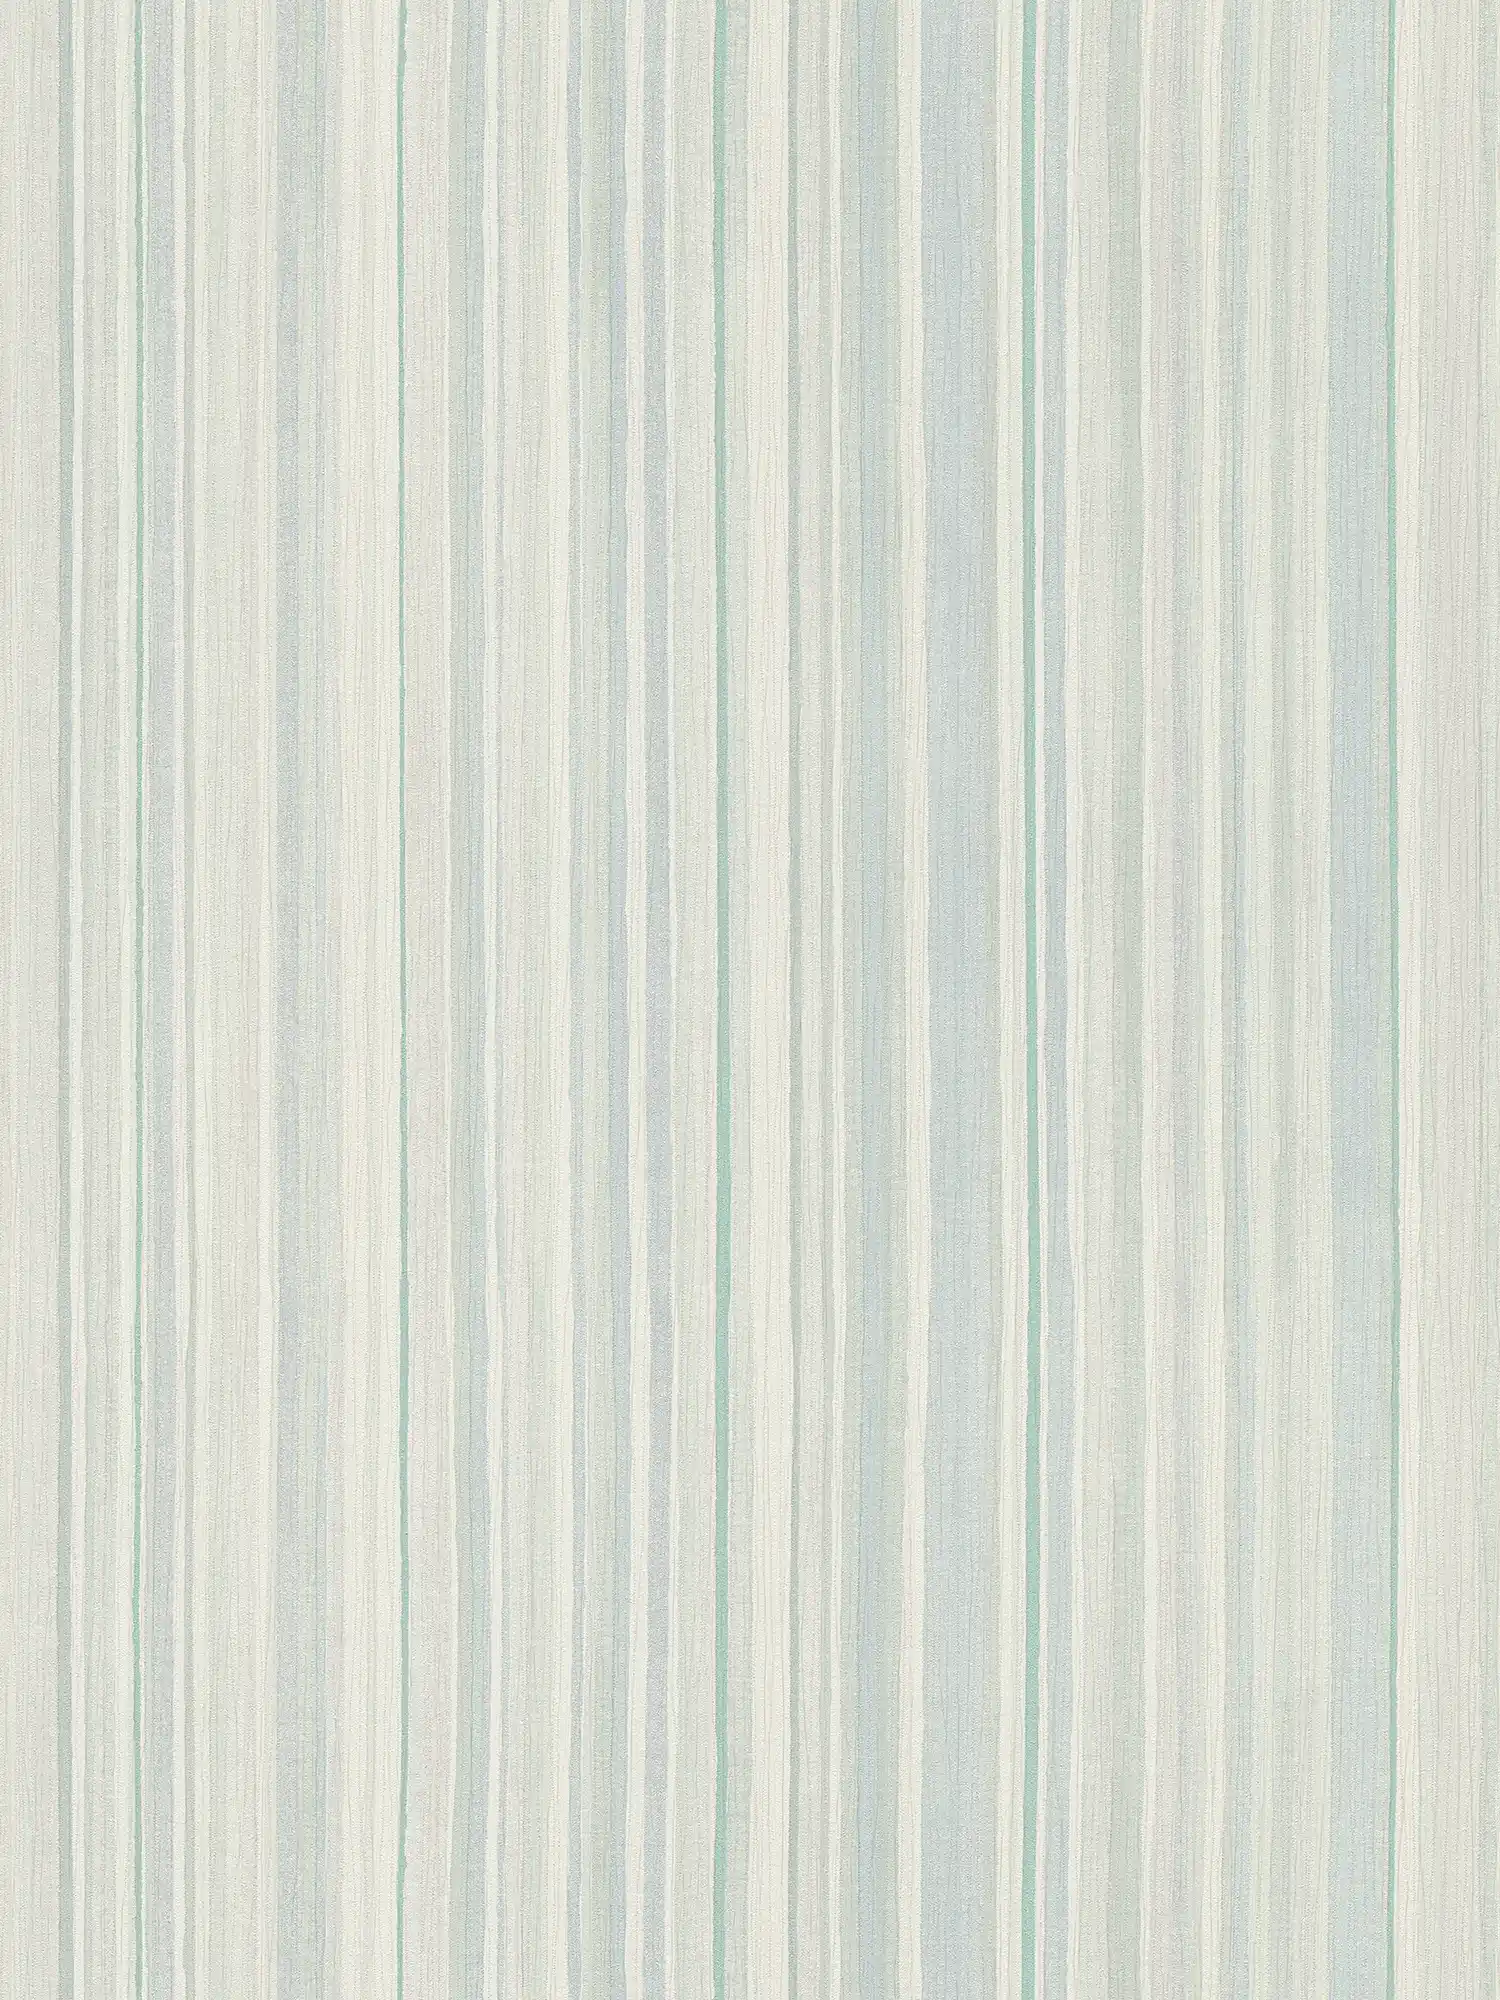 Papier peint rayé avec motif de lignes - bleu, vert, gris
